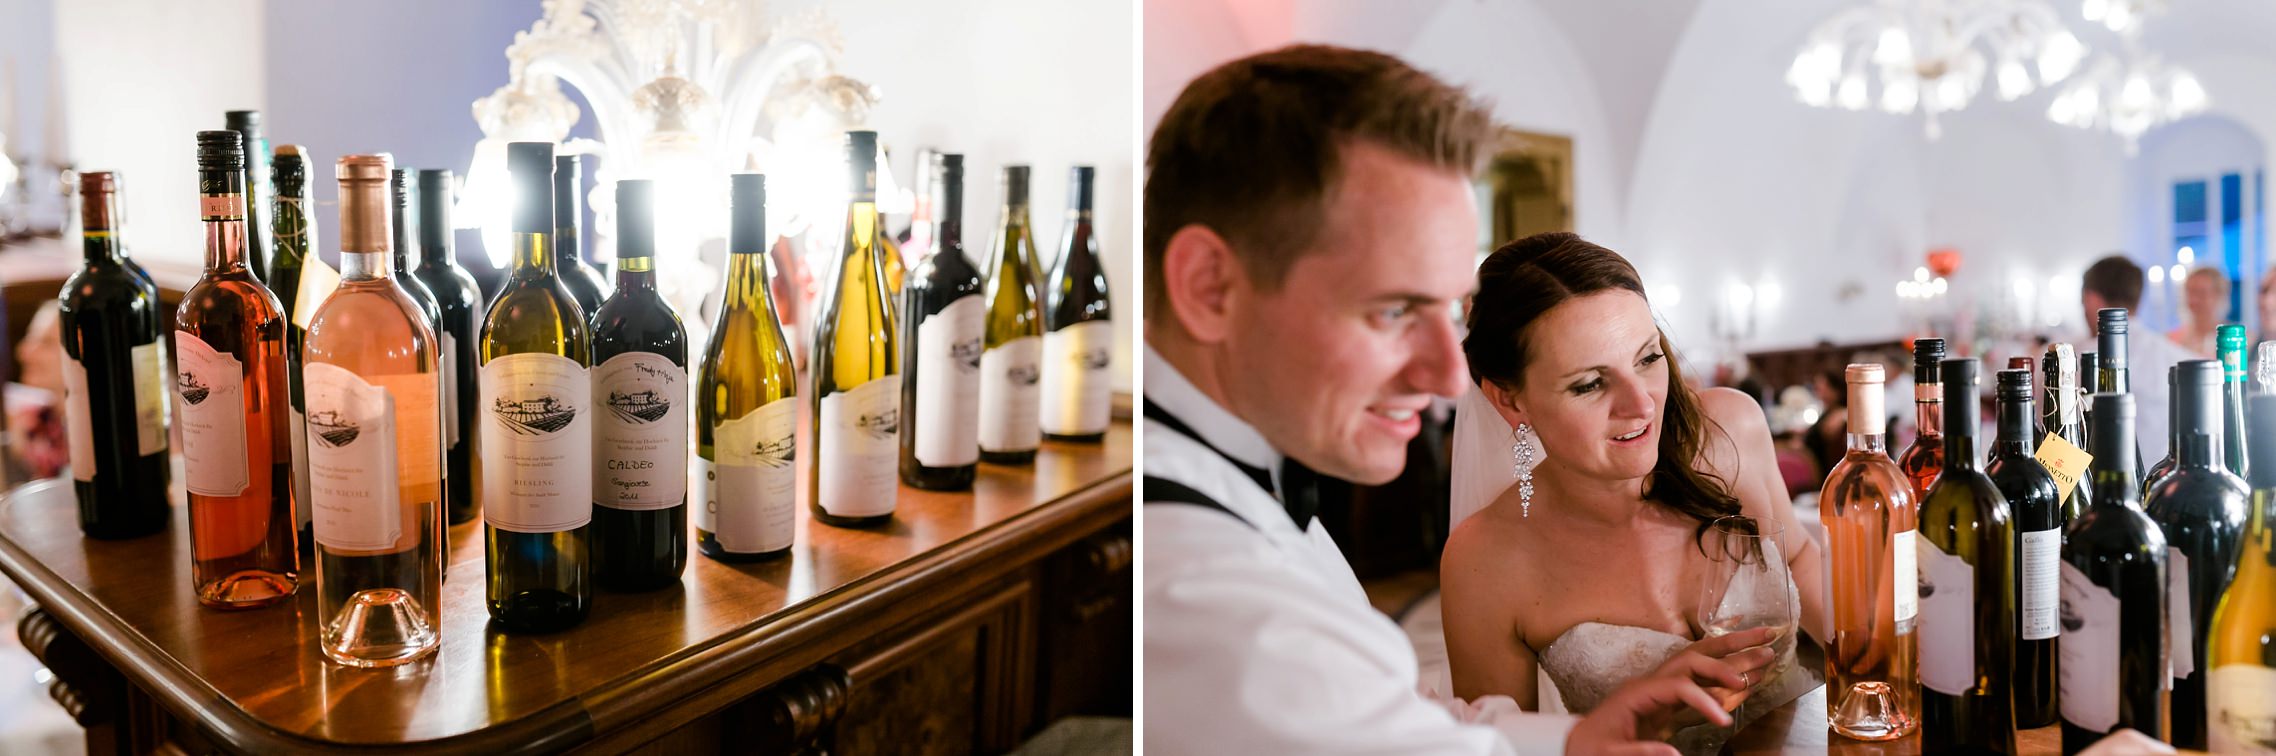 Hochzeitspaar begutachtet Weinflaschen-Gastgeschenke